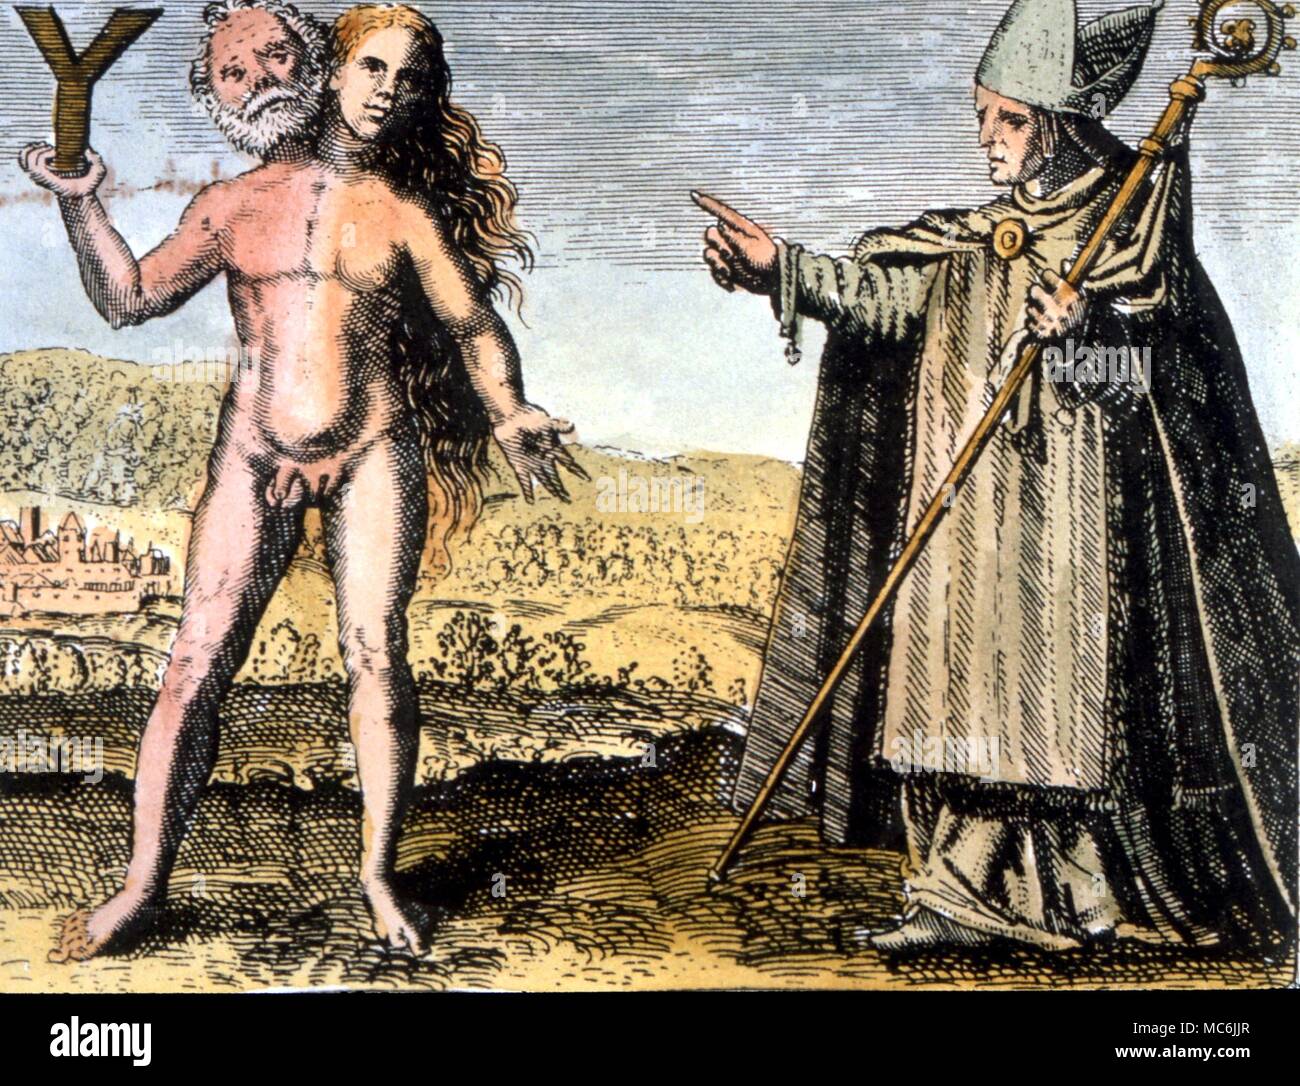 Gli occultisti - ALBERTUS MAGNUS. Albertus con il pitagorico Y e la ermafroditi. Incisione da 1617 edizione di Michael Maier's 'Symbola Auraea' Foto Stock